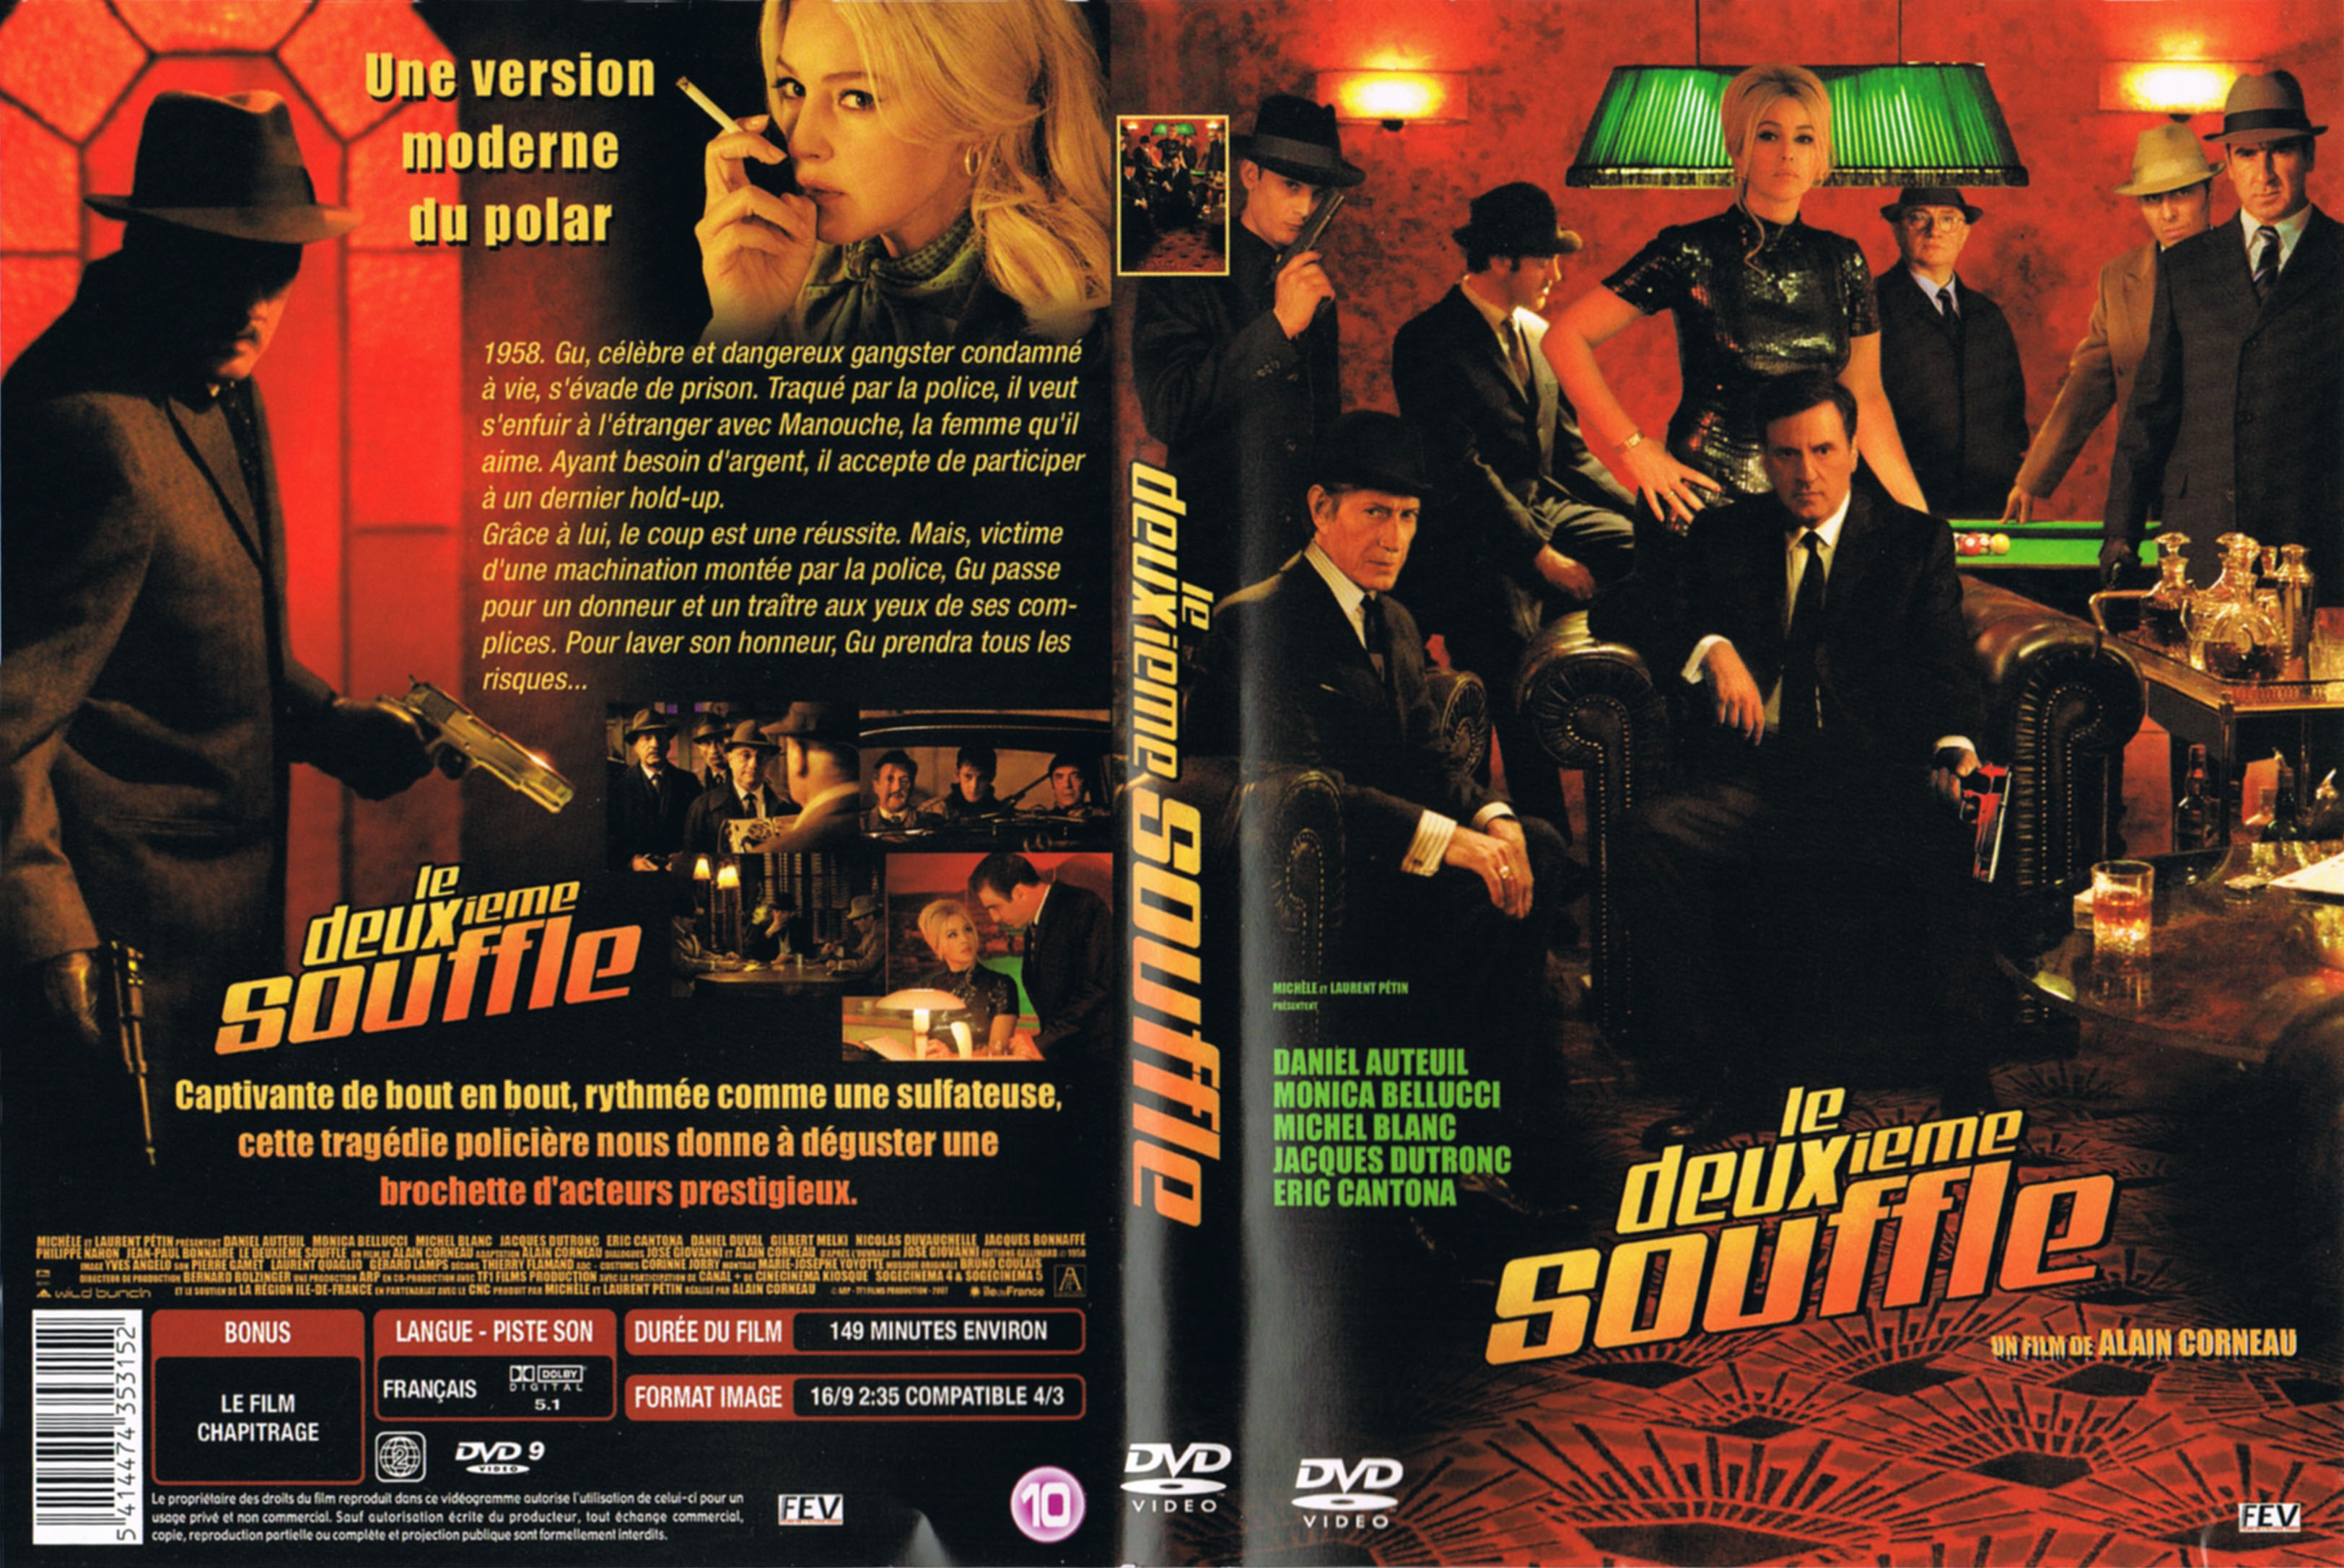 Jaquette DVD Le deuxieme souffle (2007) v3